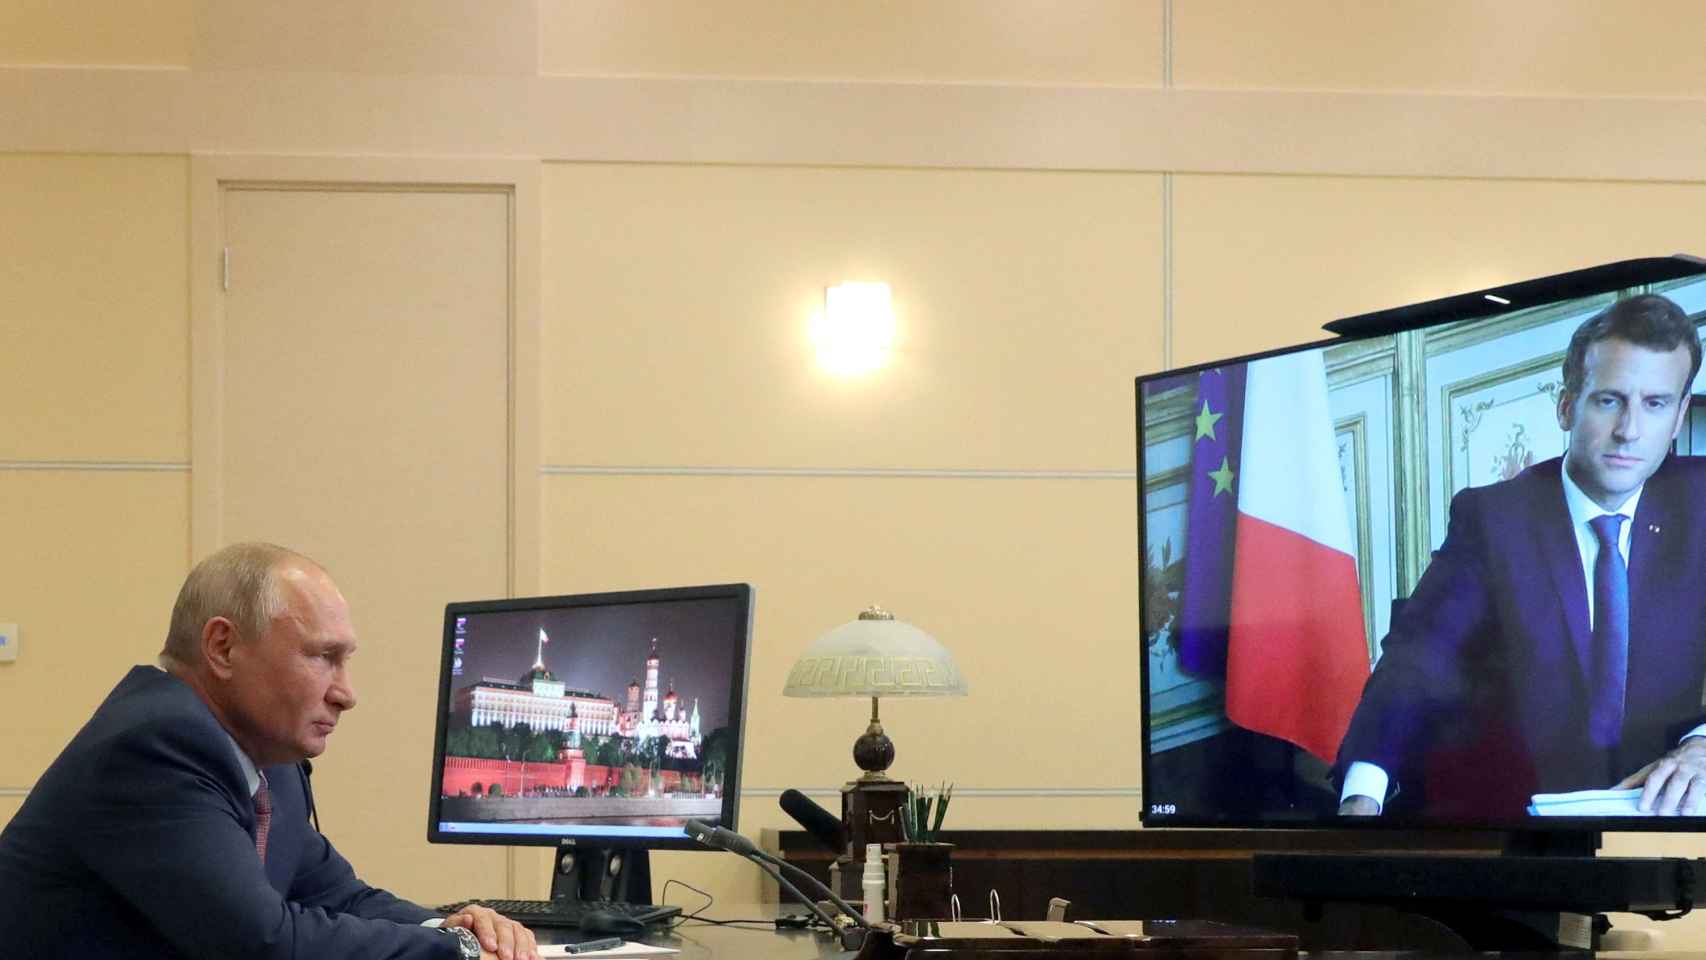 Macron y Putin en una videoconferencia el pasado mes de enero.